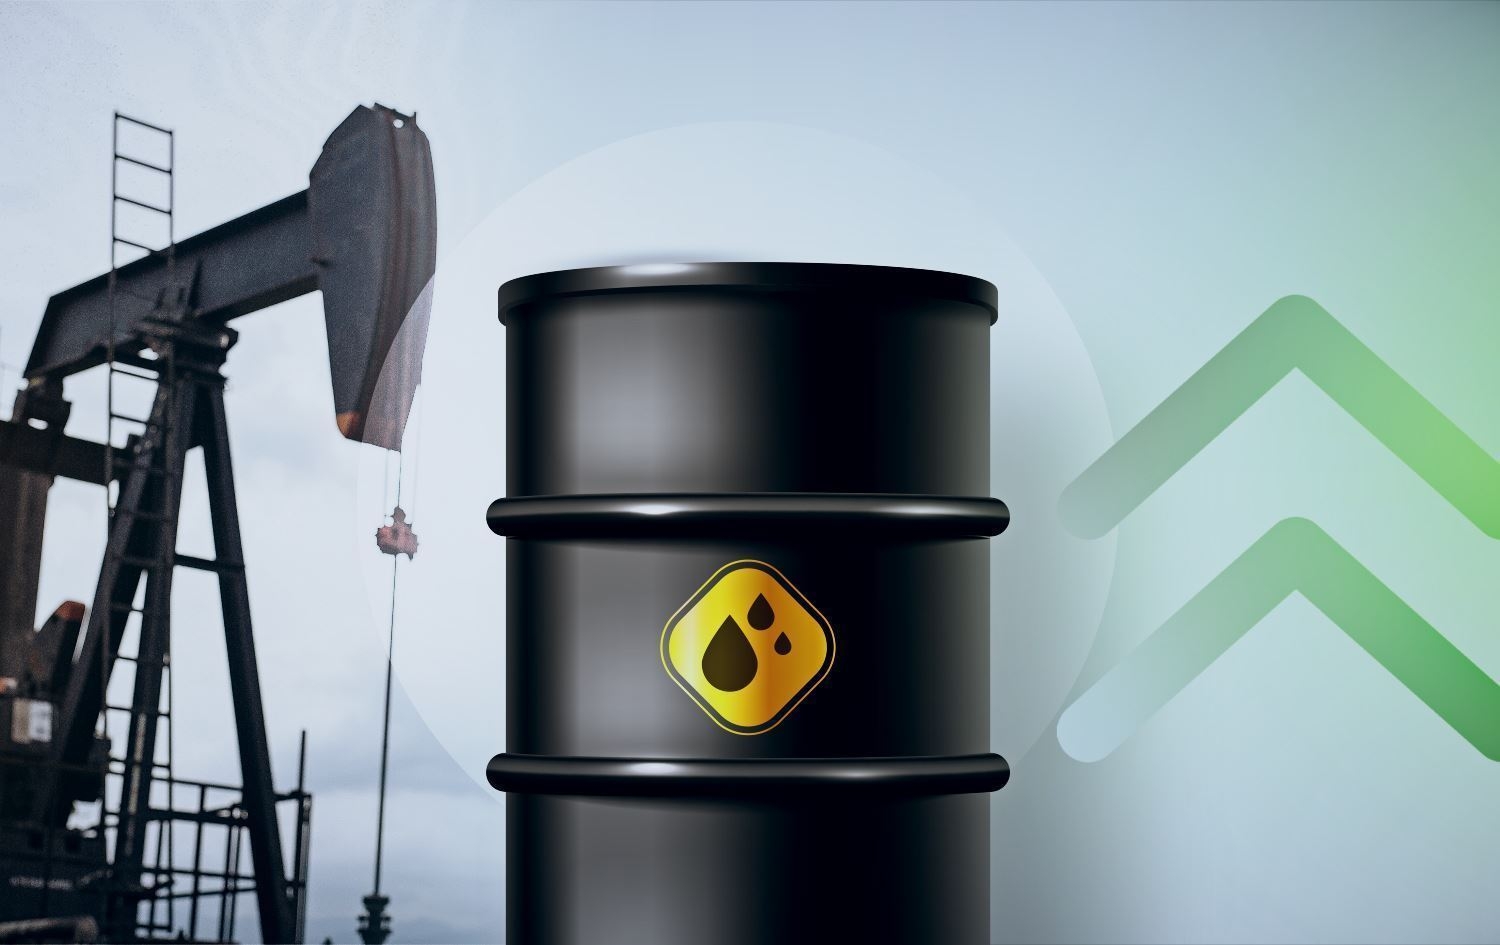 ارتفاع اسعار النفط مع تقلص المخزونات الأمريكية